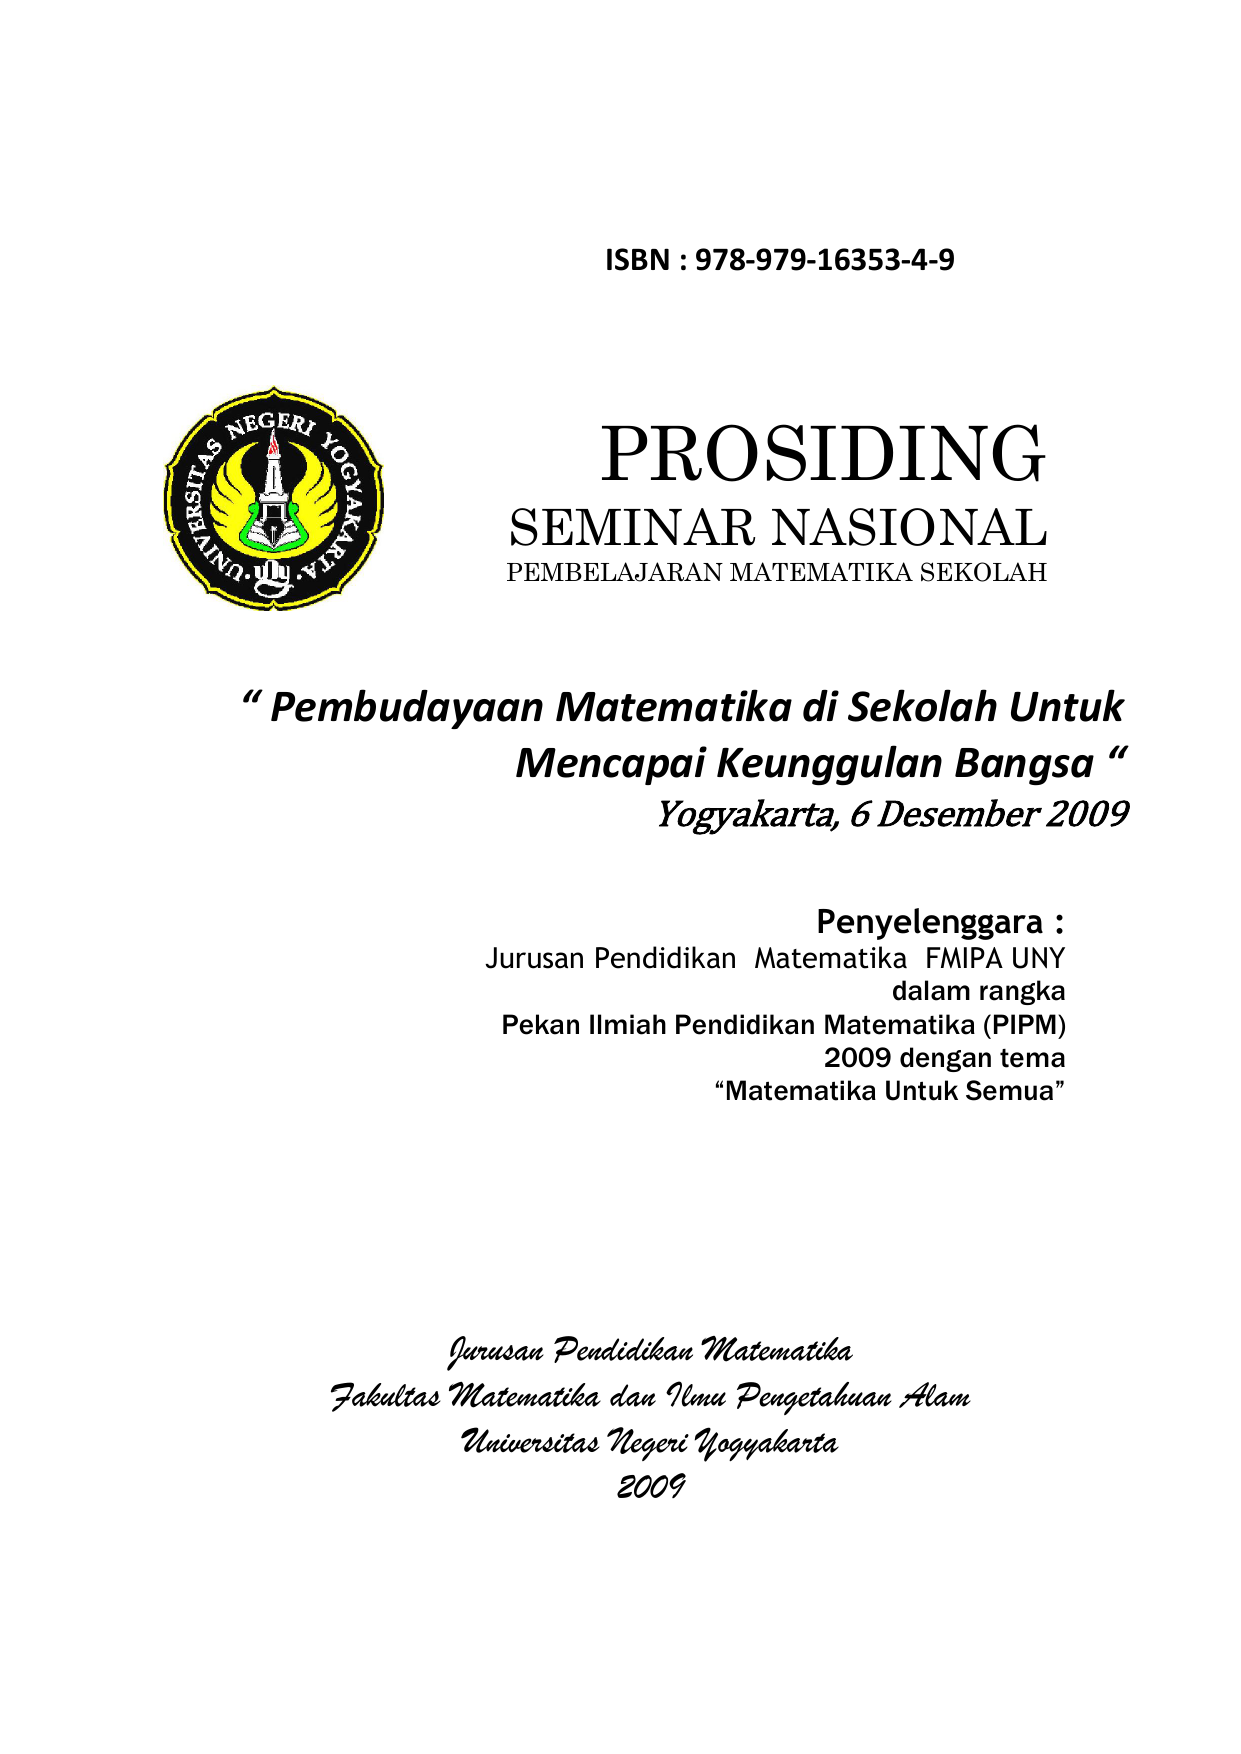 Pembudayaan Matematika di Sekolah Untuk Mencapai Keunggulan Bangsa “ Yogyakarta 6 Desember 2009 Penyelenggara Jurusan Pendidikan Matematika FMIPA UNY